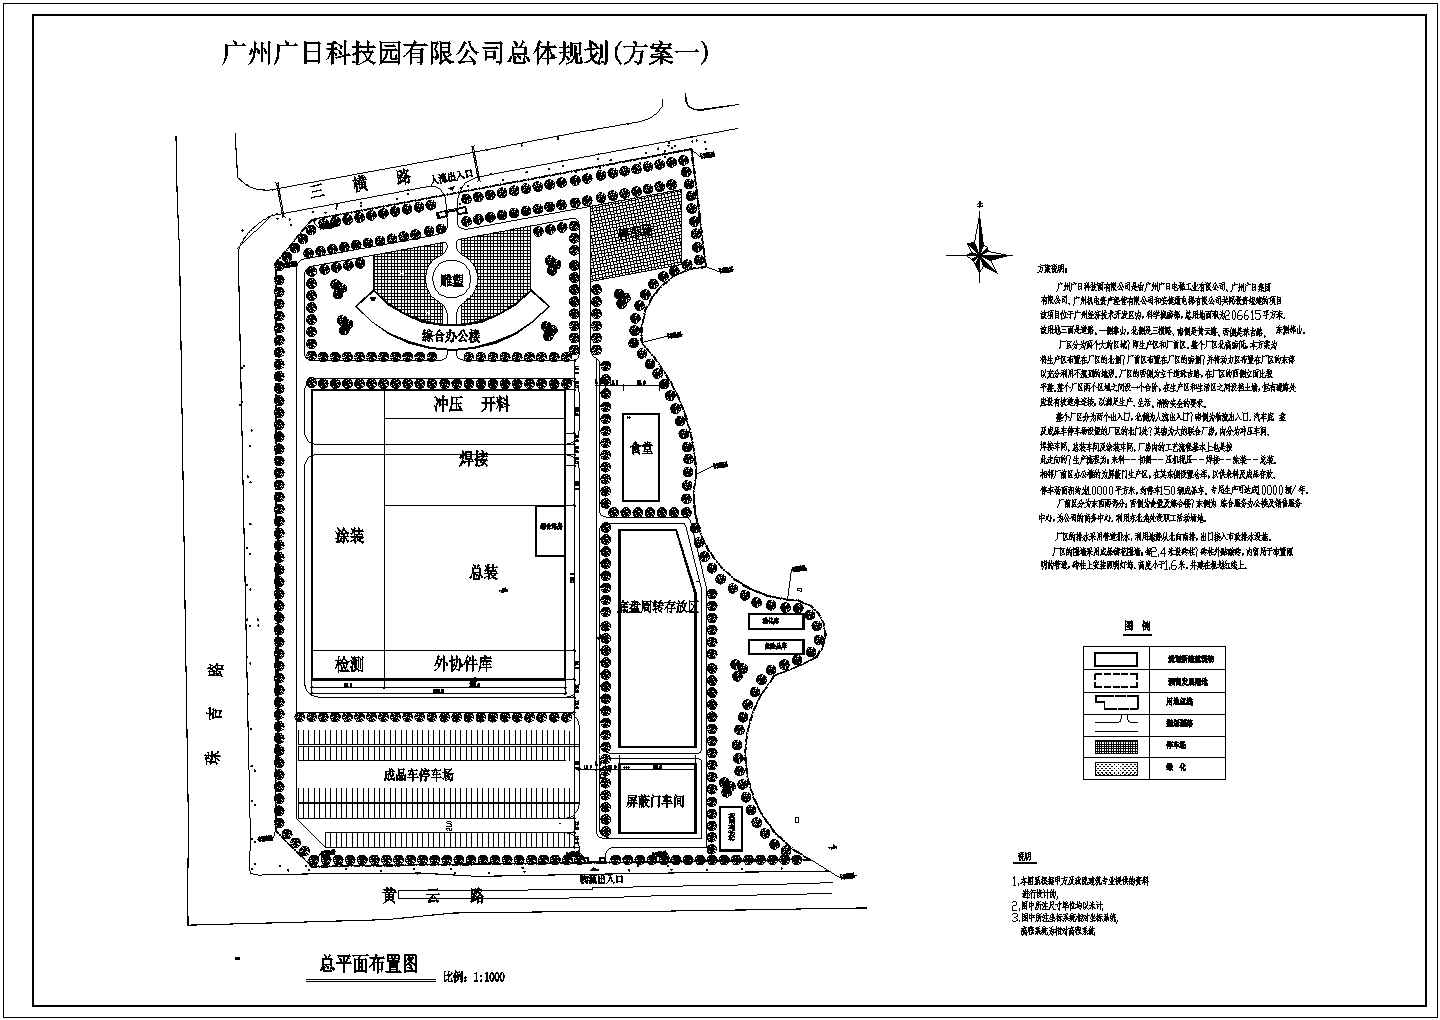 【广州市】广日科技园建筑规划平面总图